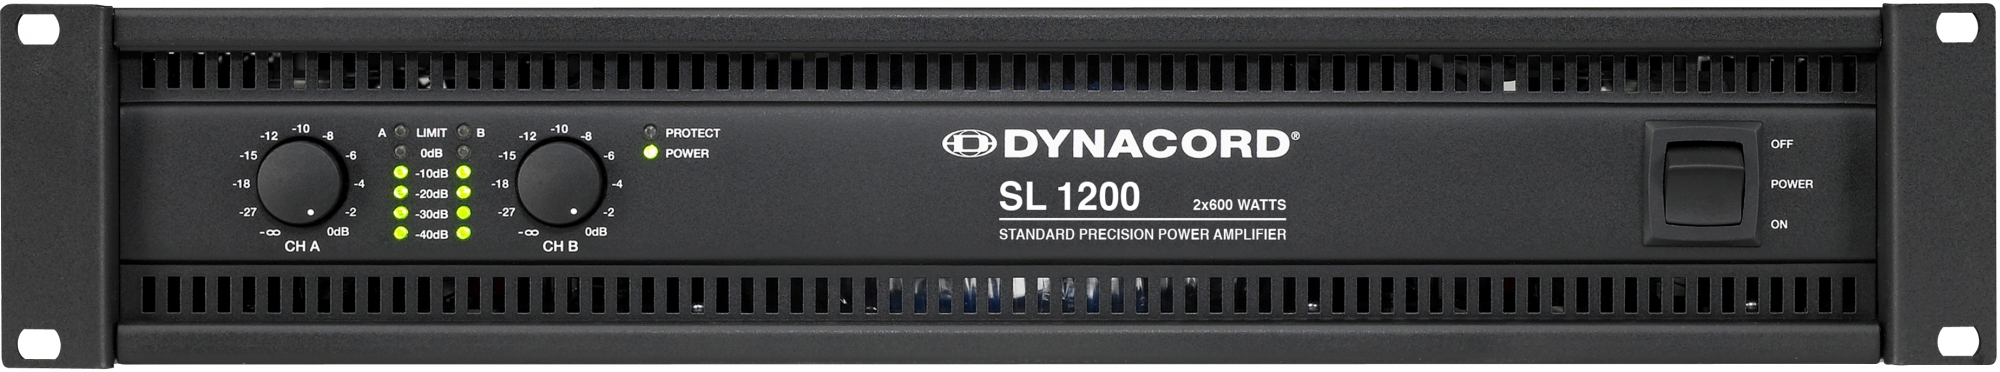 Dynacord SL 1200 effektforsterker